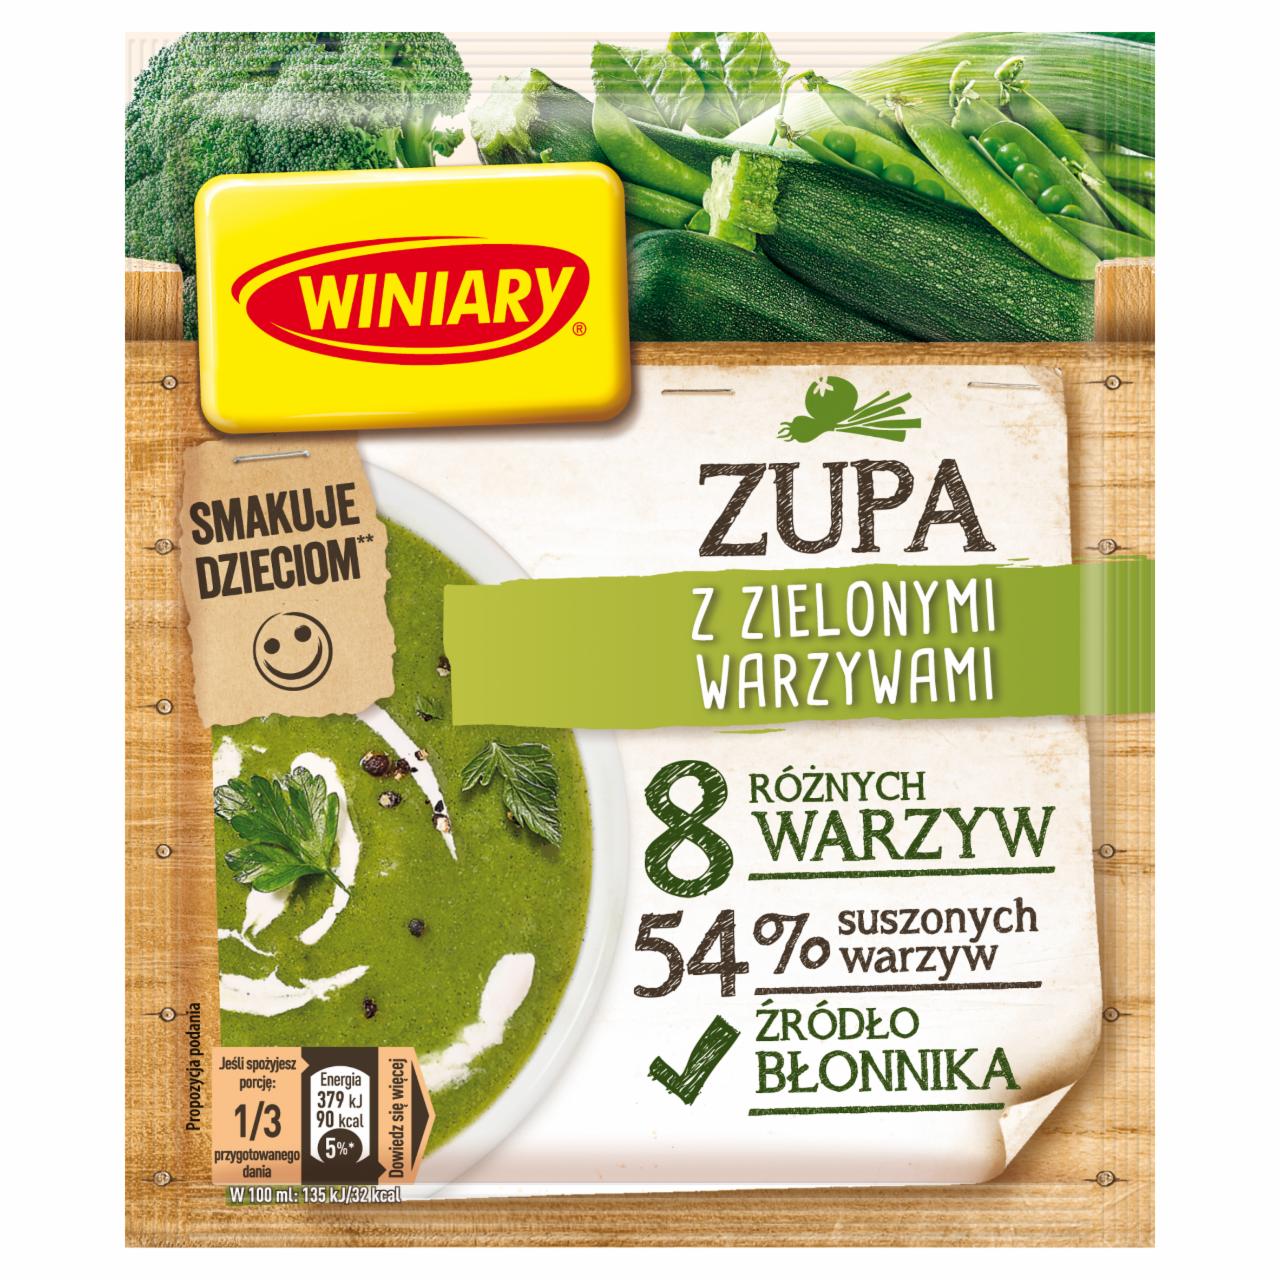 Zdjęcia - Winiary Zupa z zielonymi warzywami 65 g